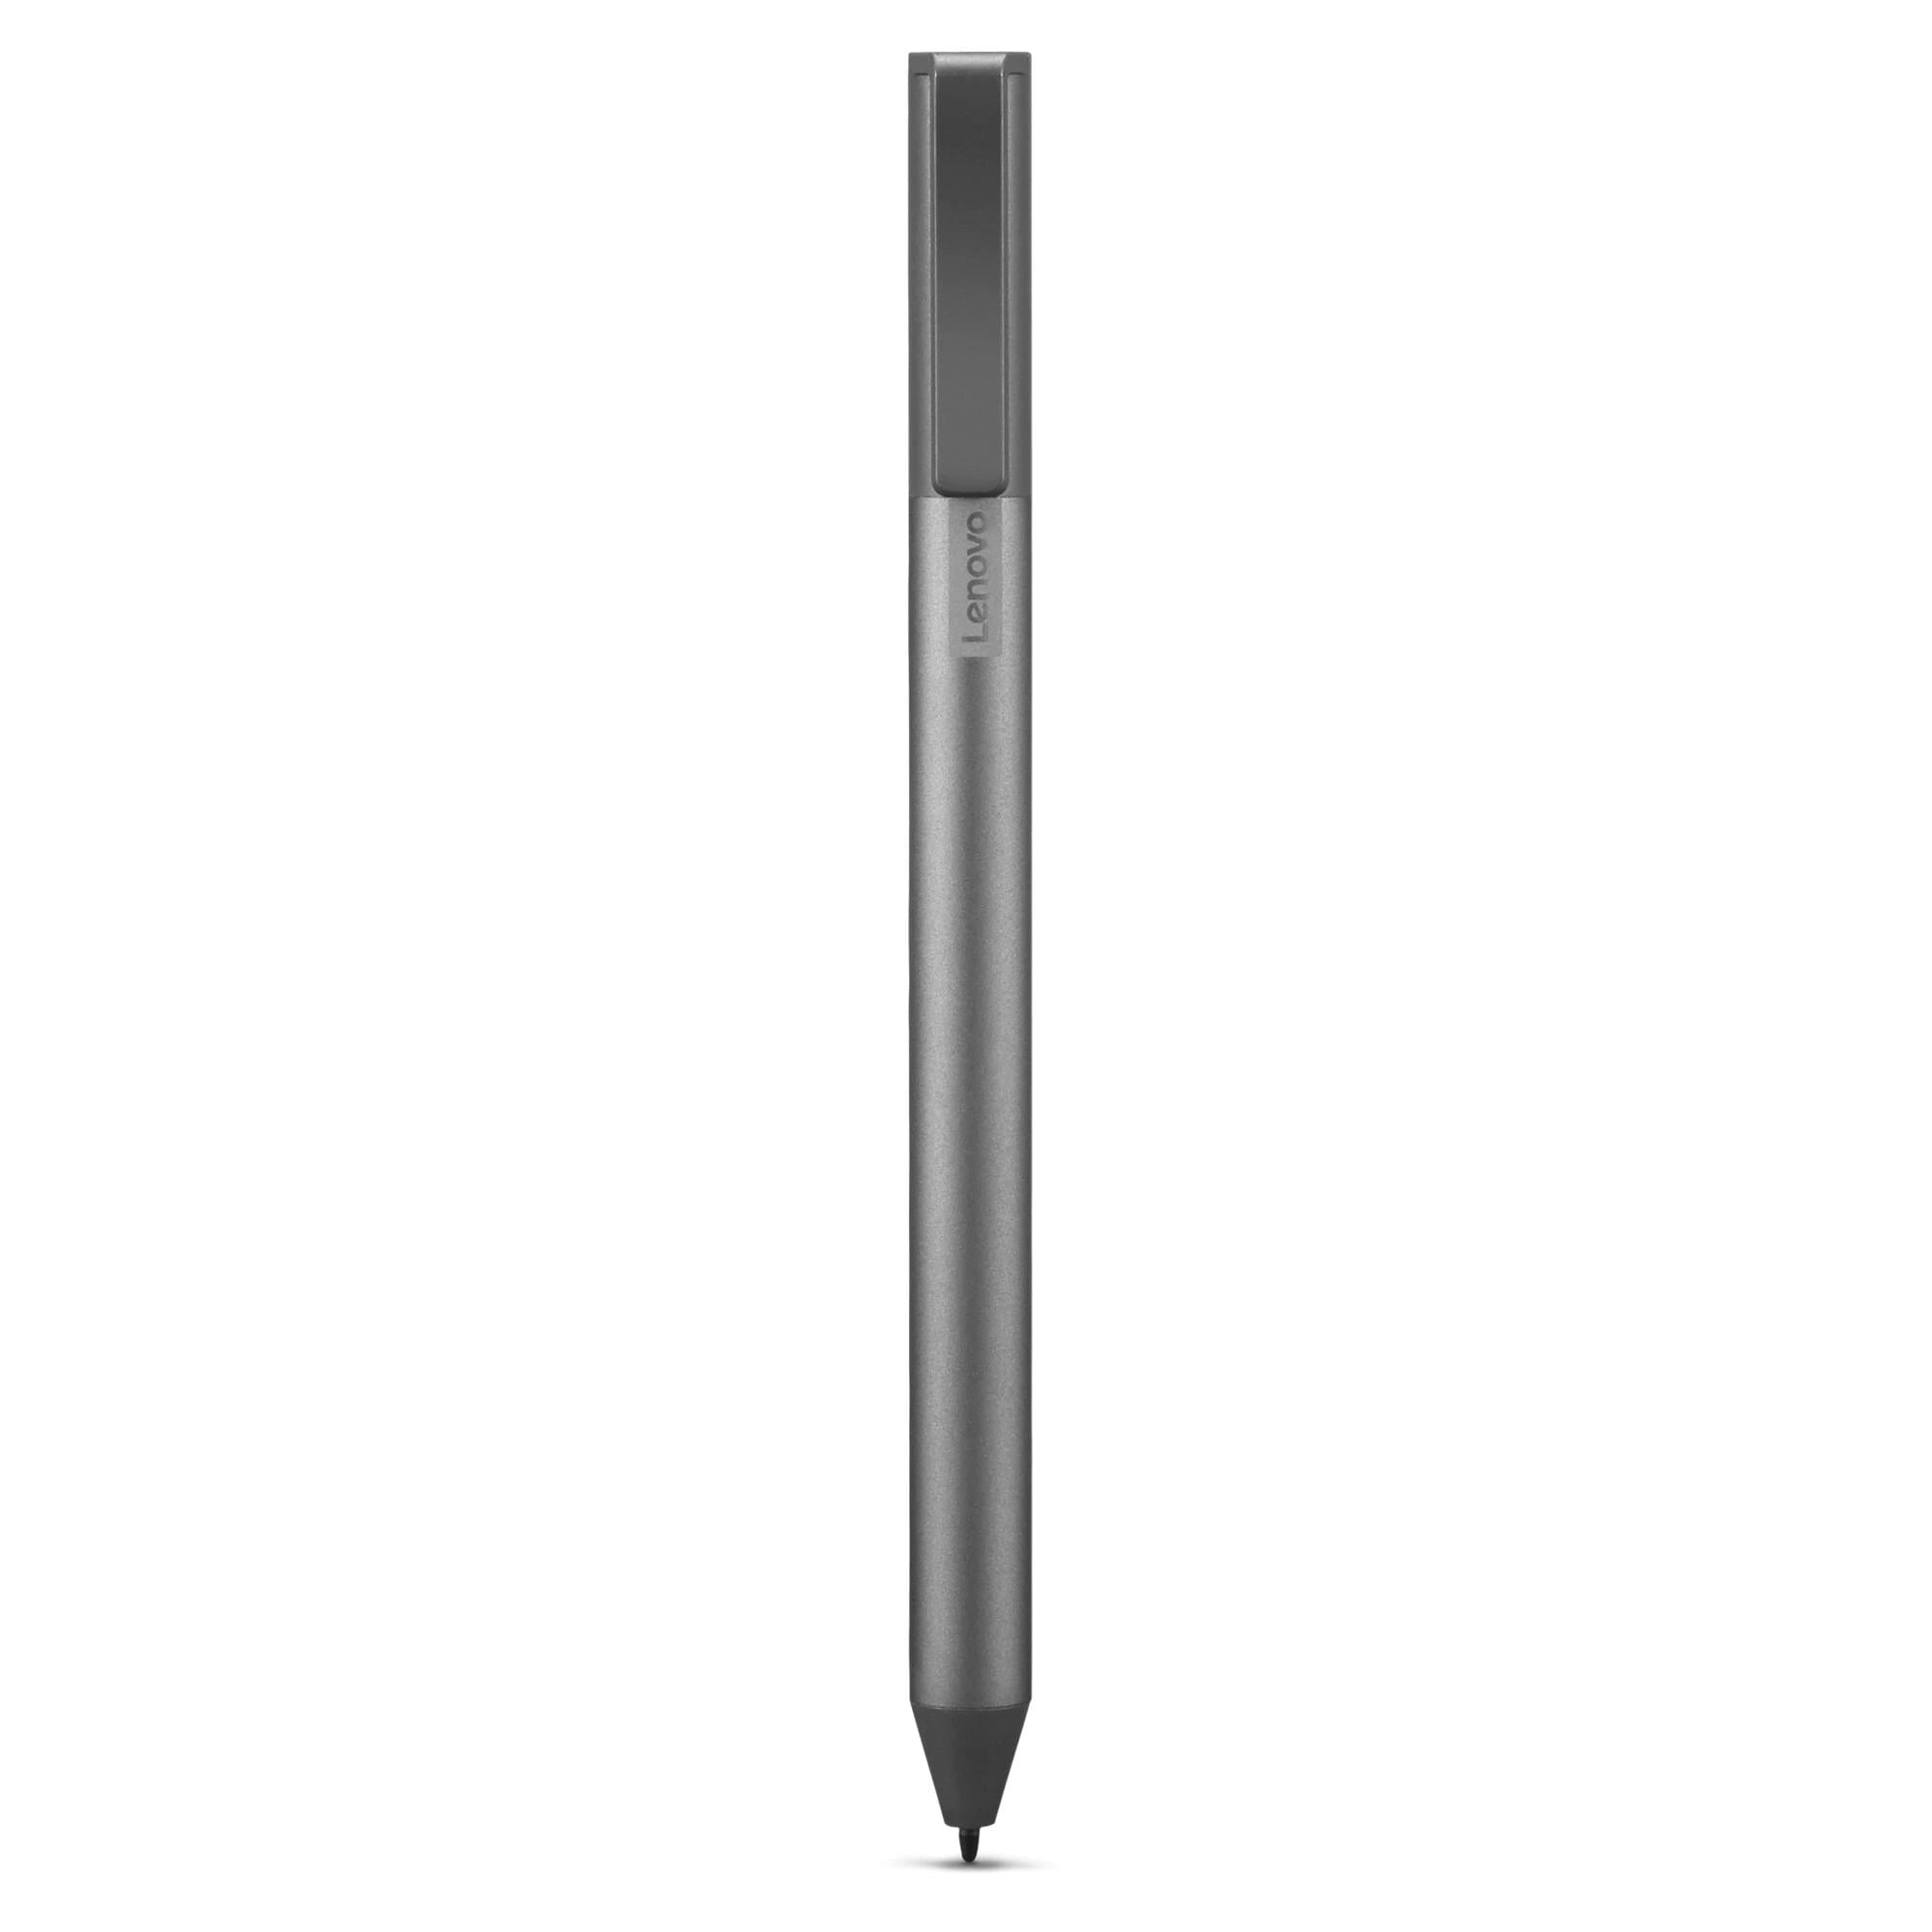 Usi Stylet Pour Lenovo Usi Stylus Pen Chromebook Gx81B10212 Avec 4096  Niveaux De Sensibilité À La Pression, Autonomie De 150 [H1]